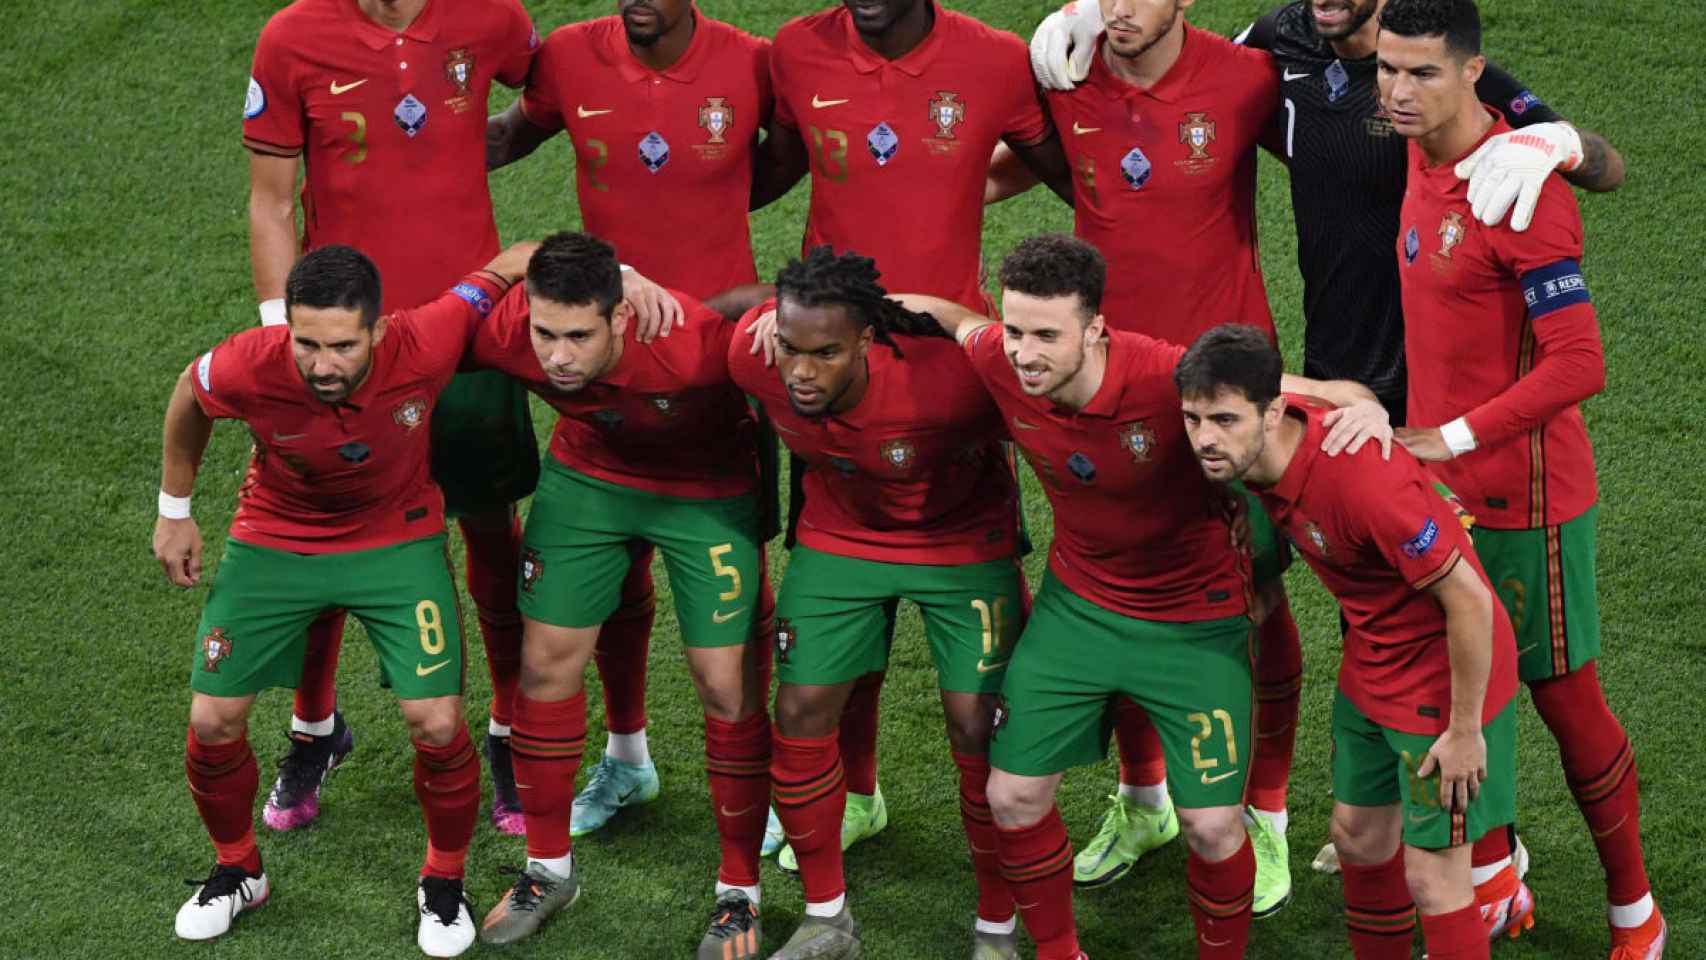 La selección portuguesa posa para los fotógrafos antes de un partido oficial / REDES